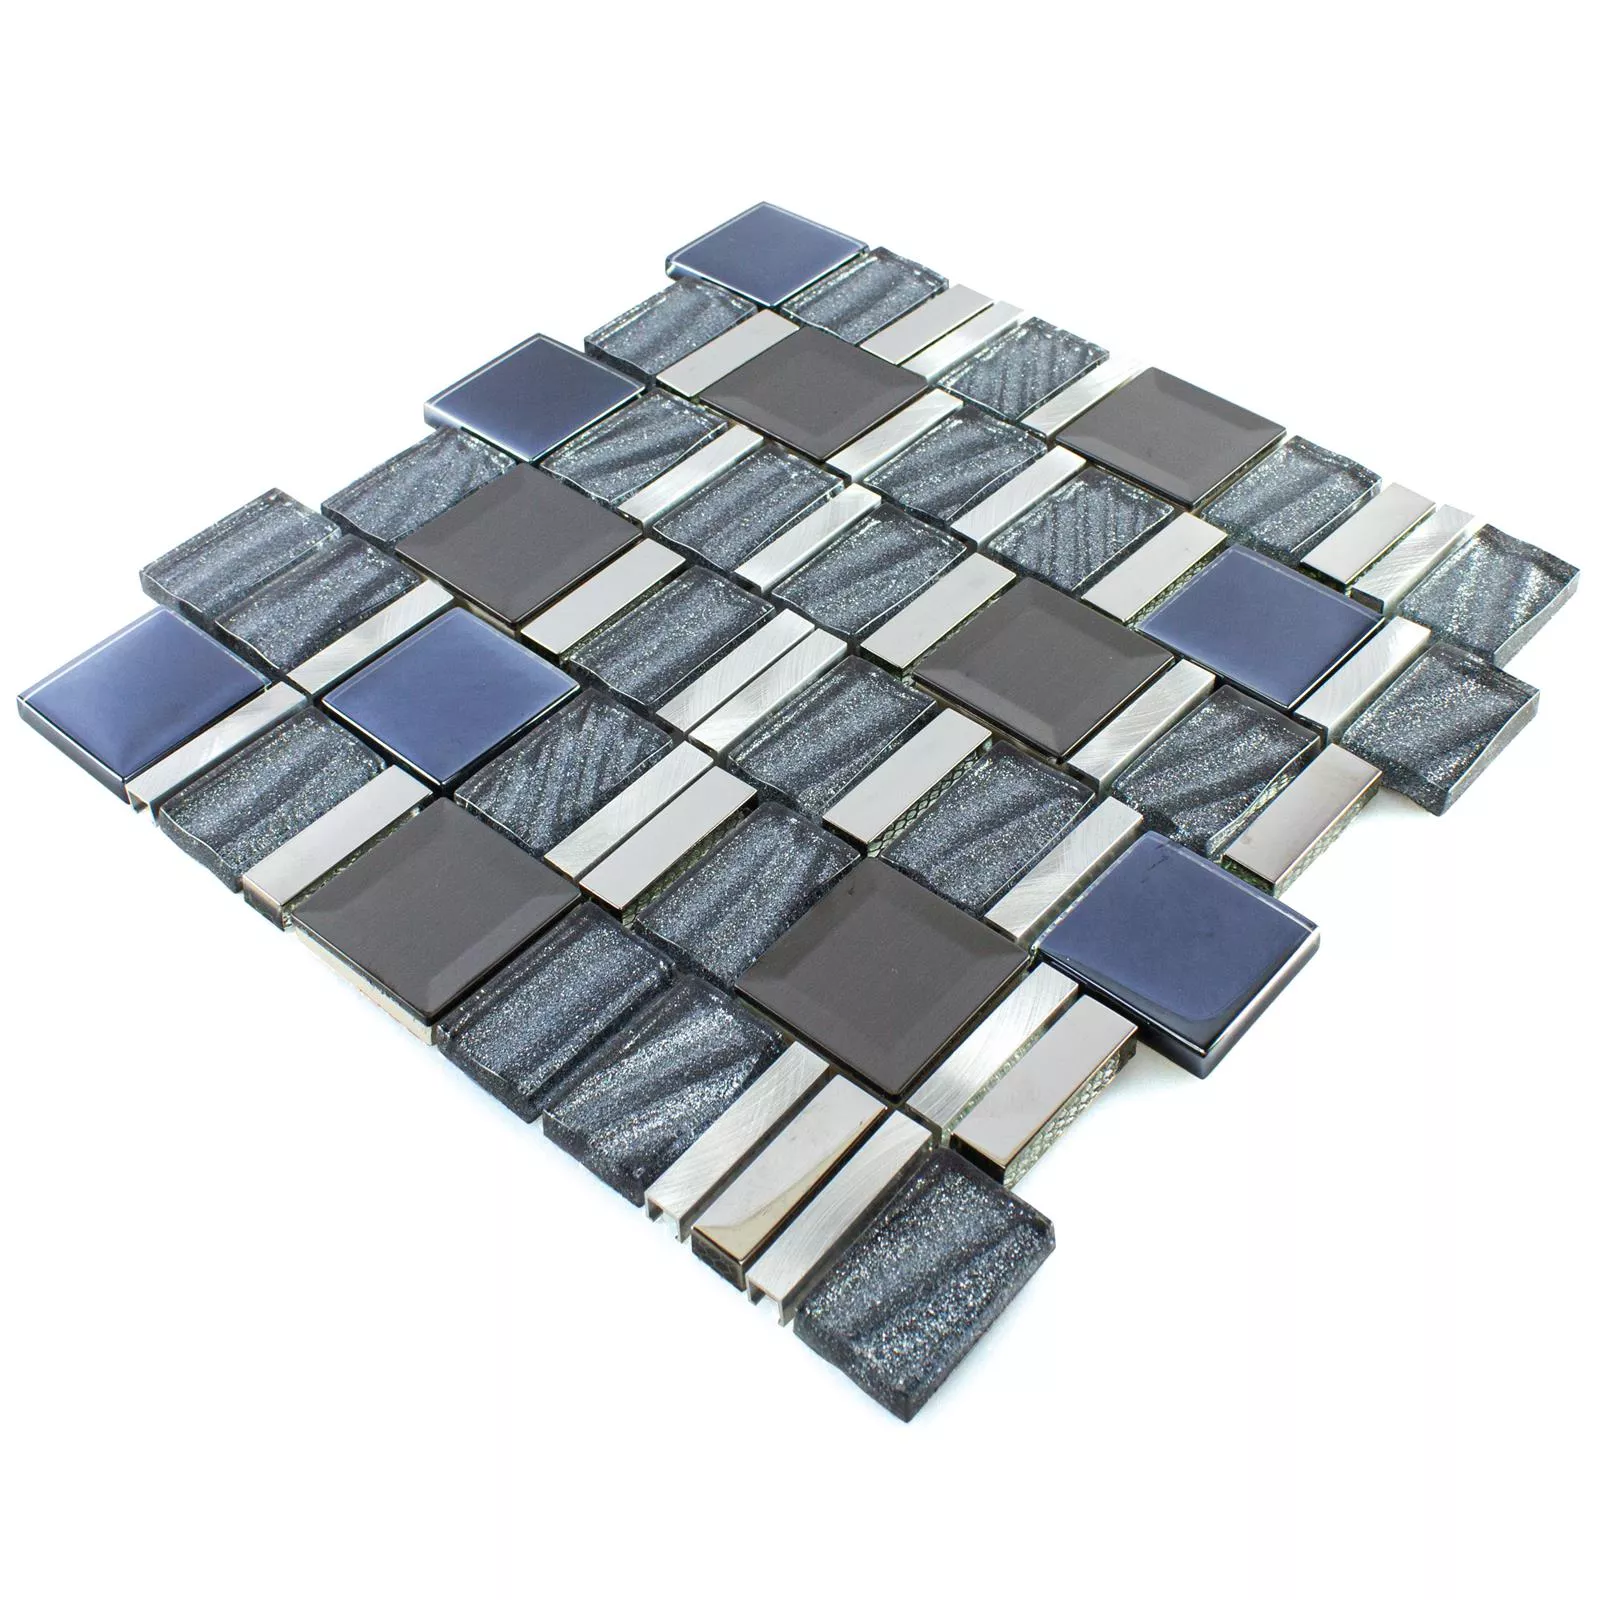 Glass Aluminium Mosaic LaCrosse Black Grey Silver